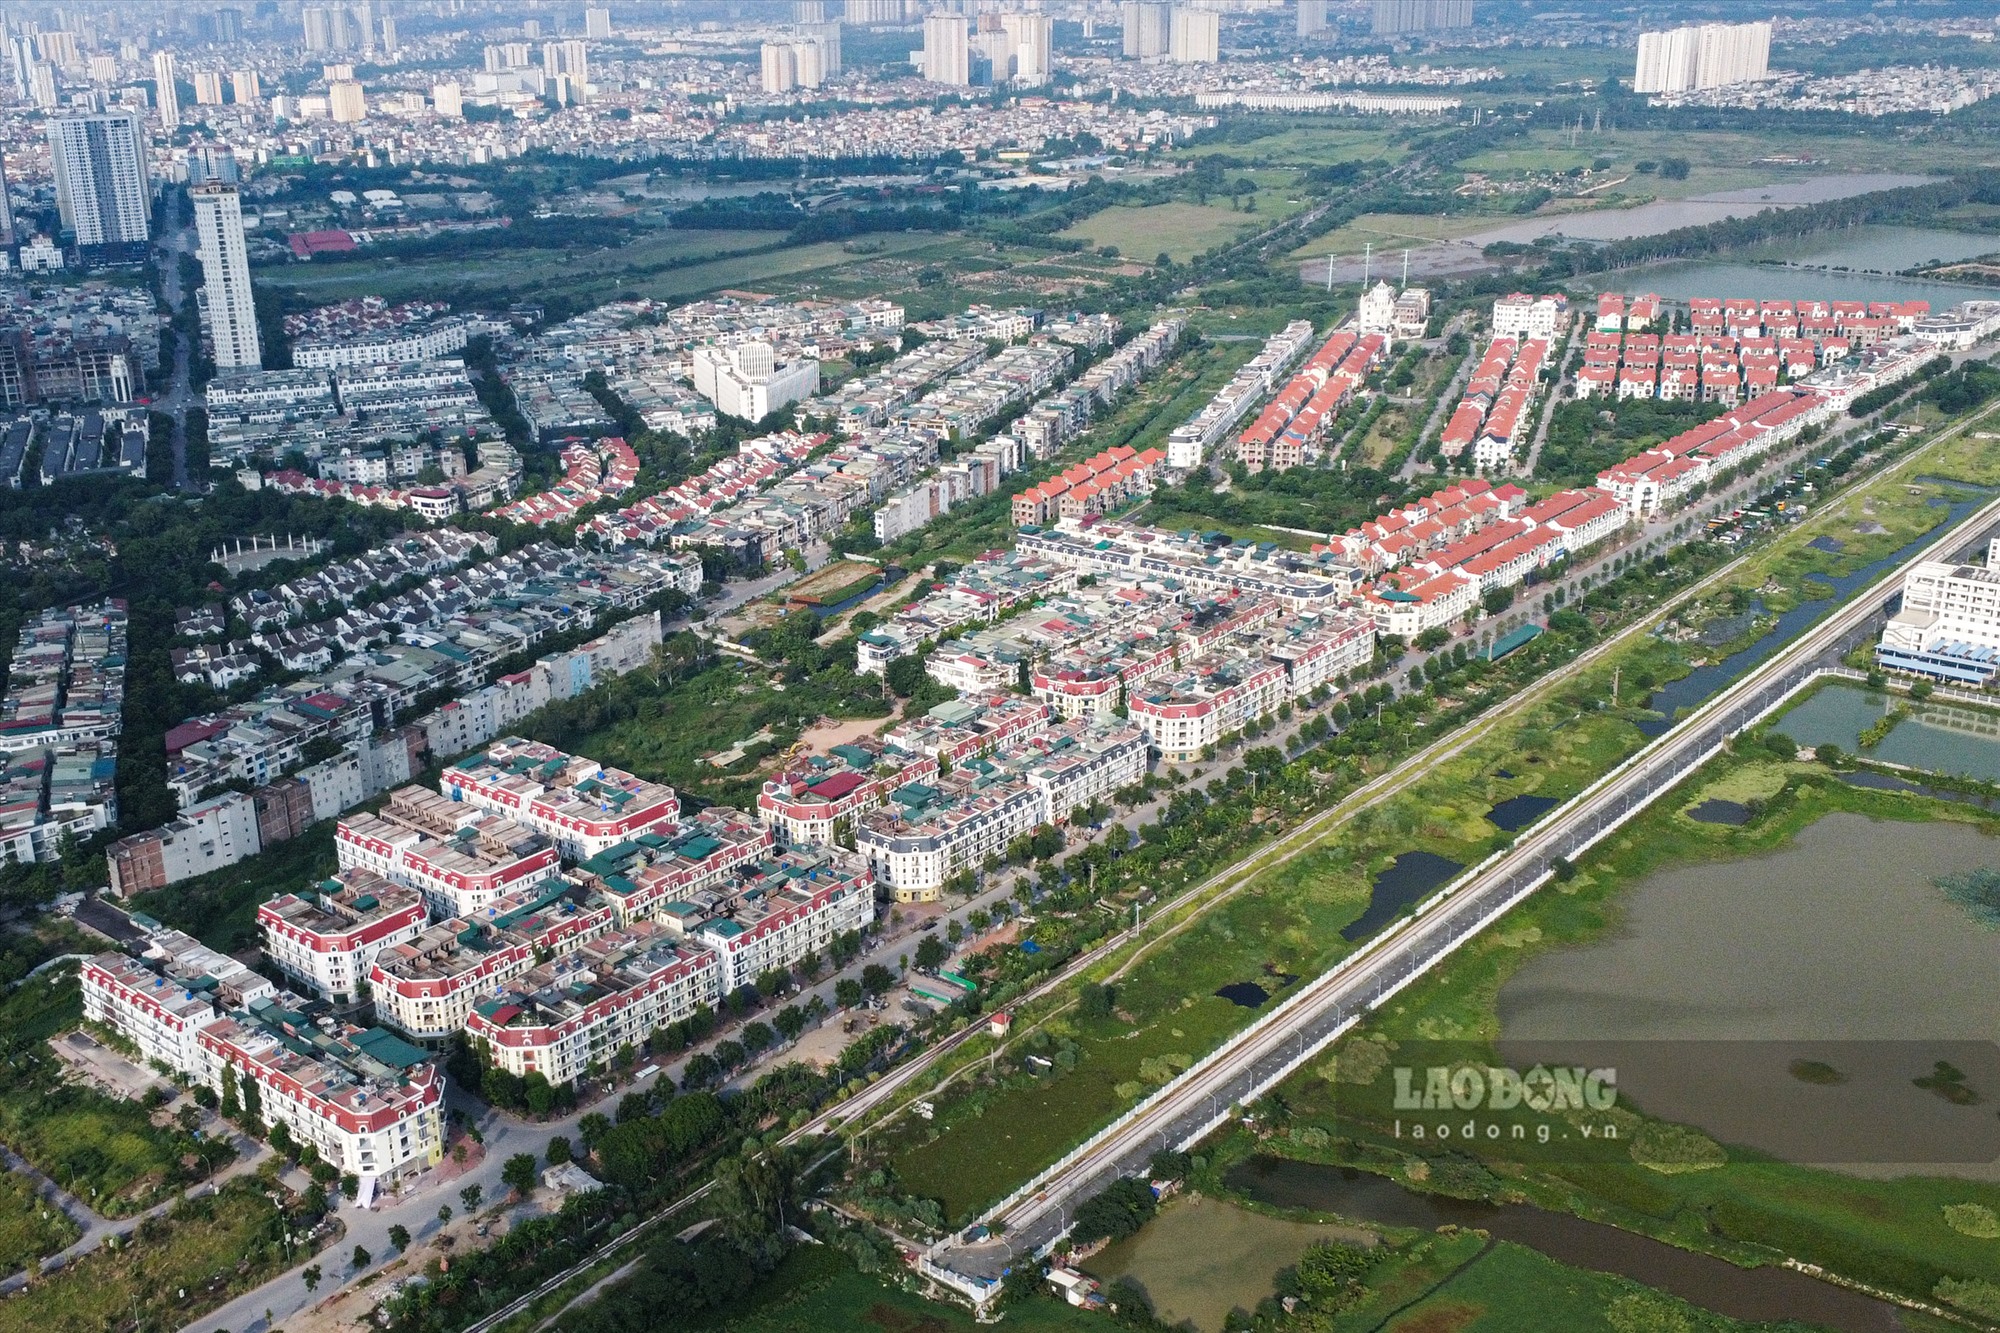 Theo lộ trình, đến năm 2019 dự án khu đô thị mới Phú Lương sẽ phải hoàn thành thi công và đến năm 2020 số người dân vào ở dự kiến đạt trên 80%.